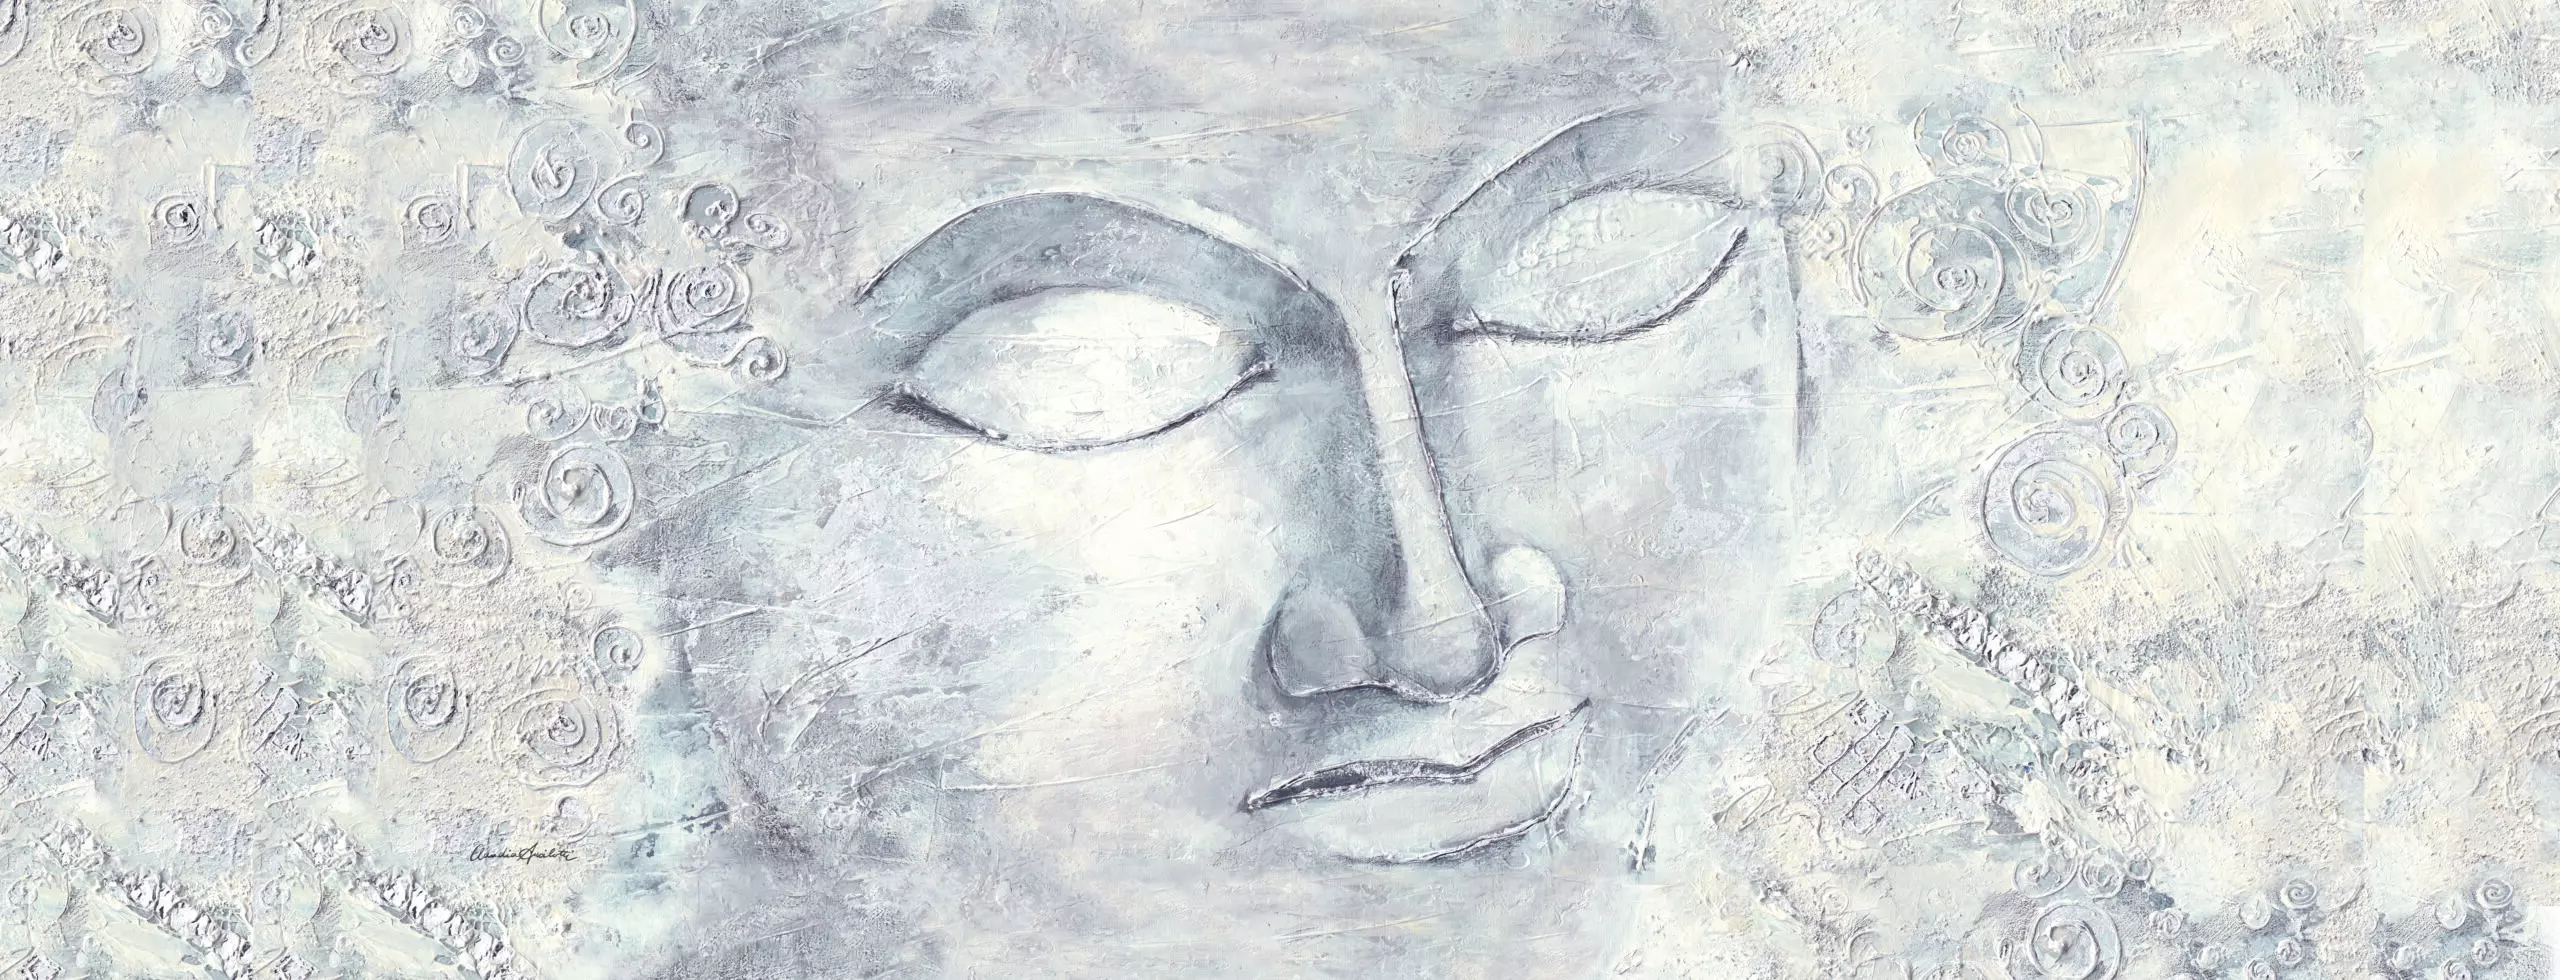 Wandbild (5541) Buddha präsentiert: Stillleben,Details und Strukturen,Zen & Wellness,Abstrakt,Floral,Modern,Sonstige Stillleben,Spiritualität,Sonstige Naturdetails